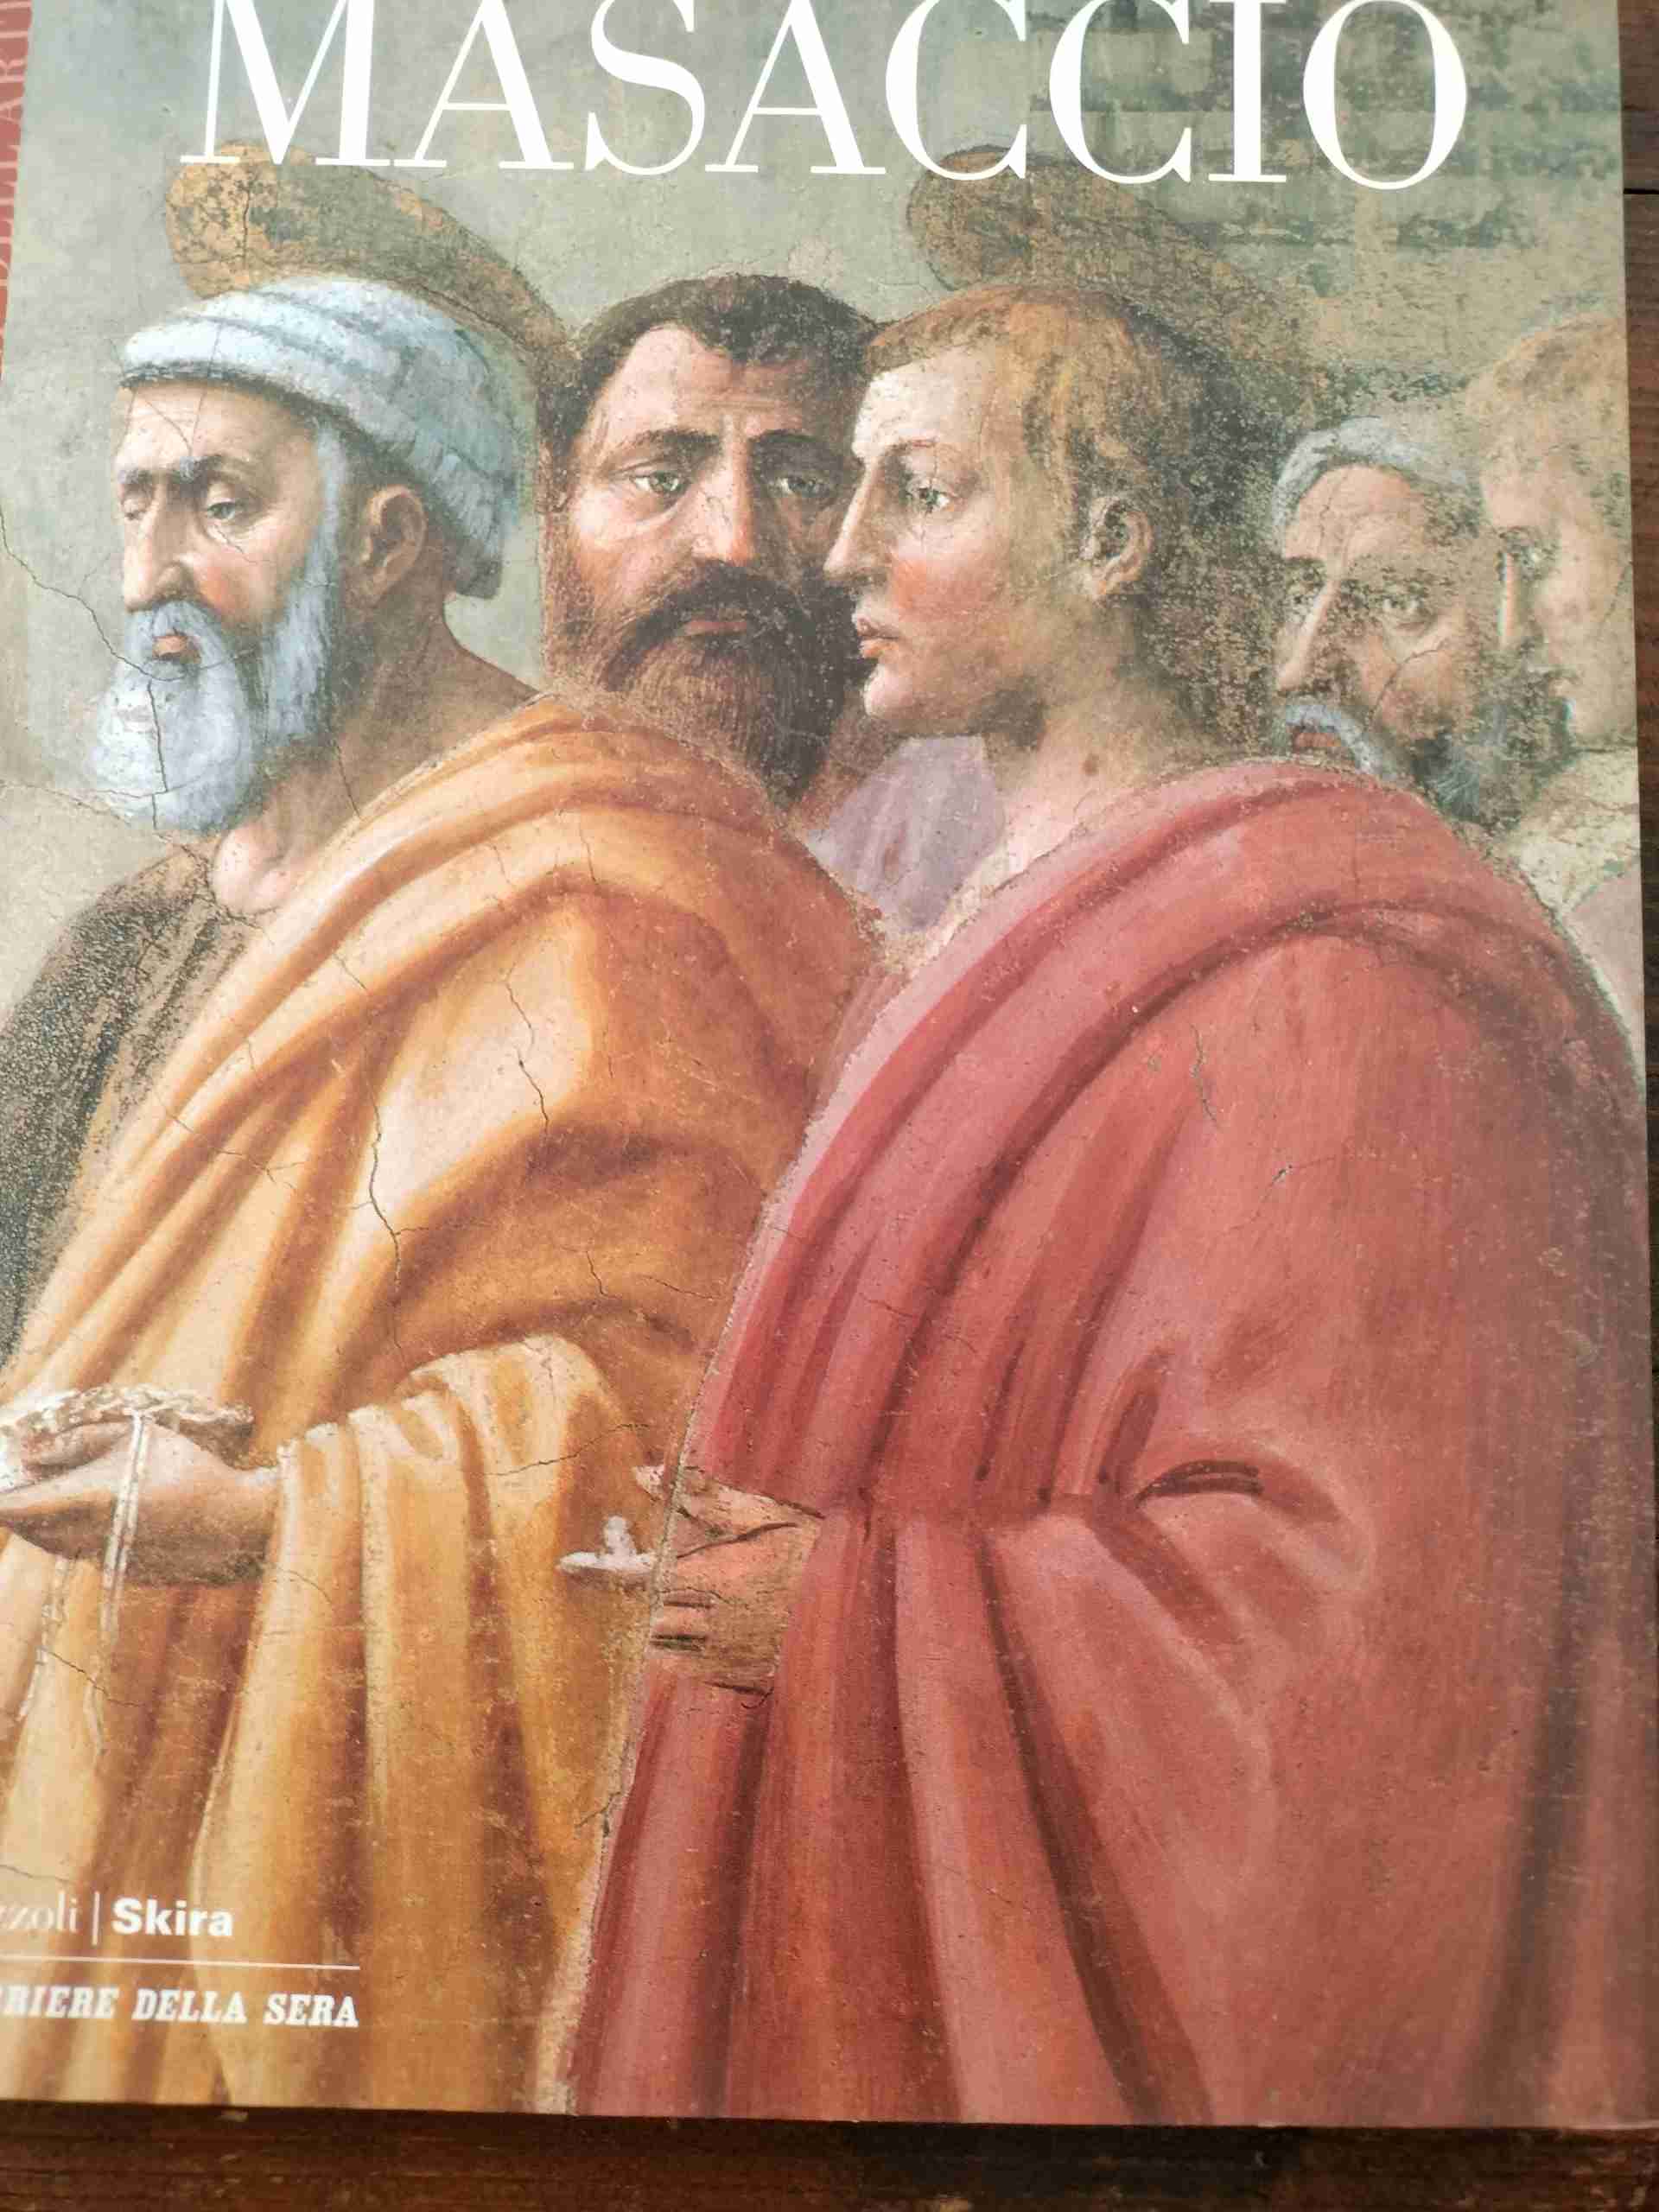 Masaccio 